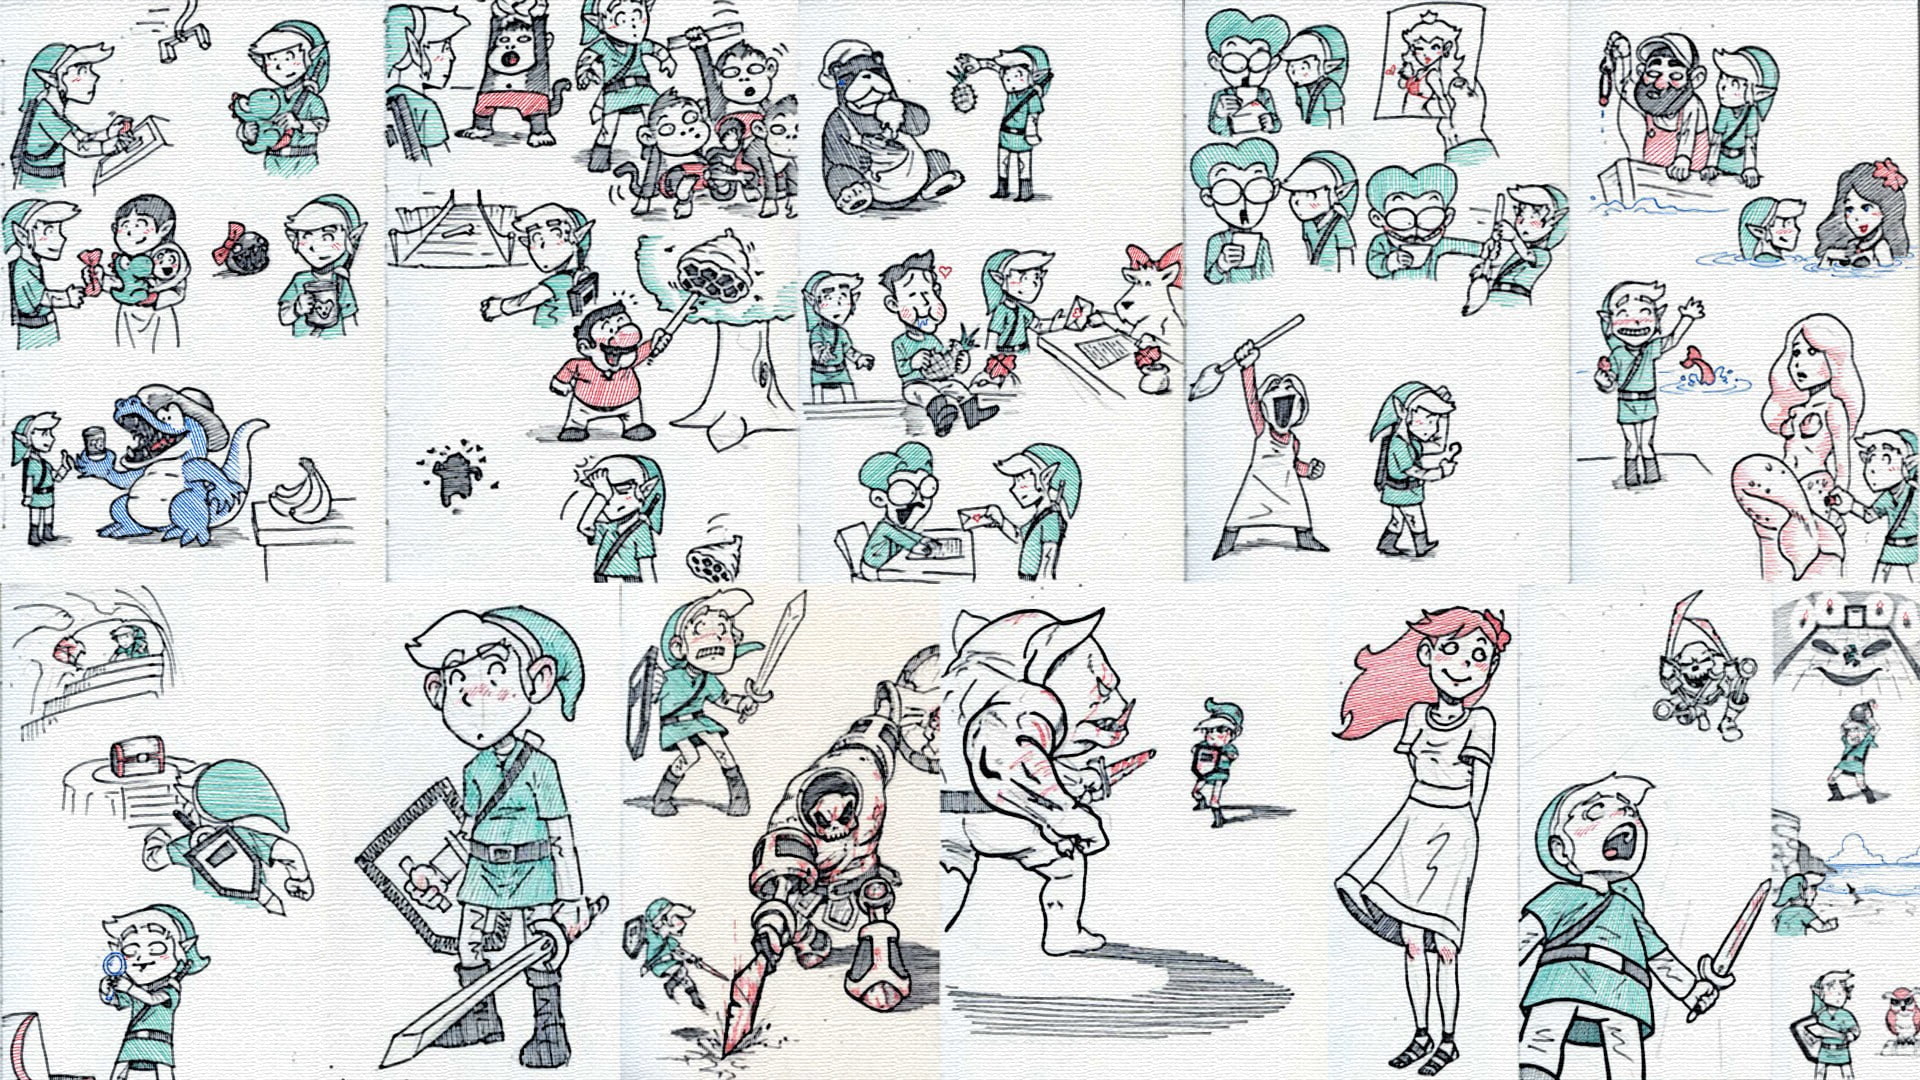 Link illustrations, The Legend of Zelda, The Legend of Zelda: Link's Awakening, Link